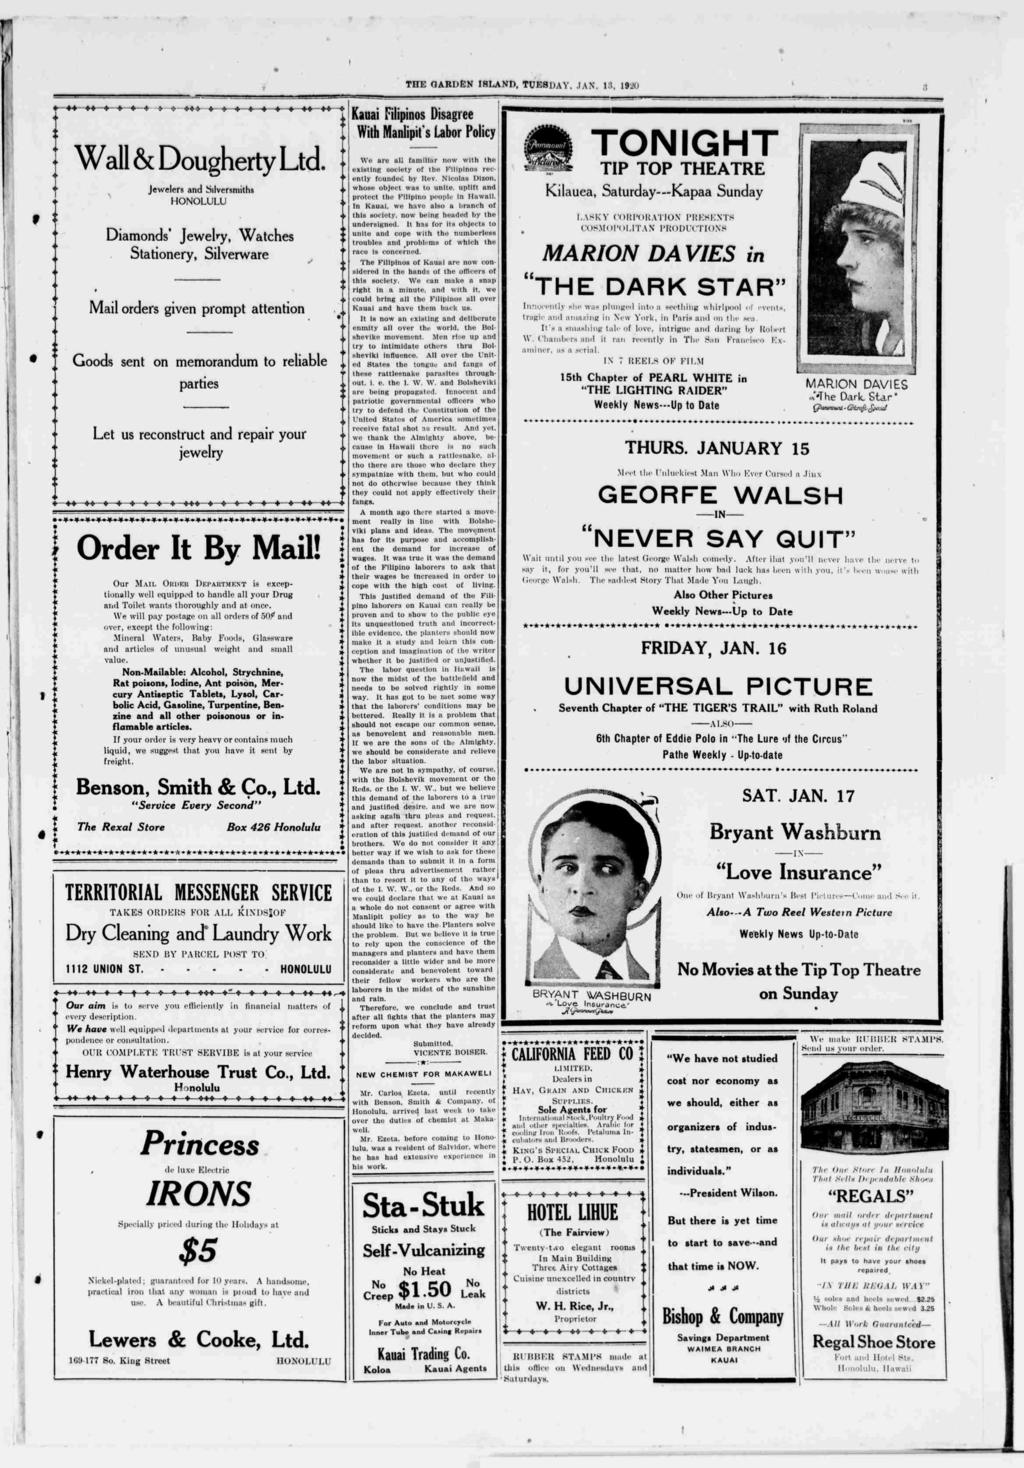 THE GARDEN SLAND, TUESDAY, AN. 13, 1920 Wall & Doughery Ld.